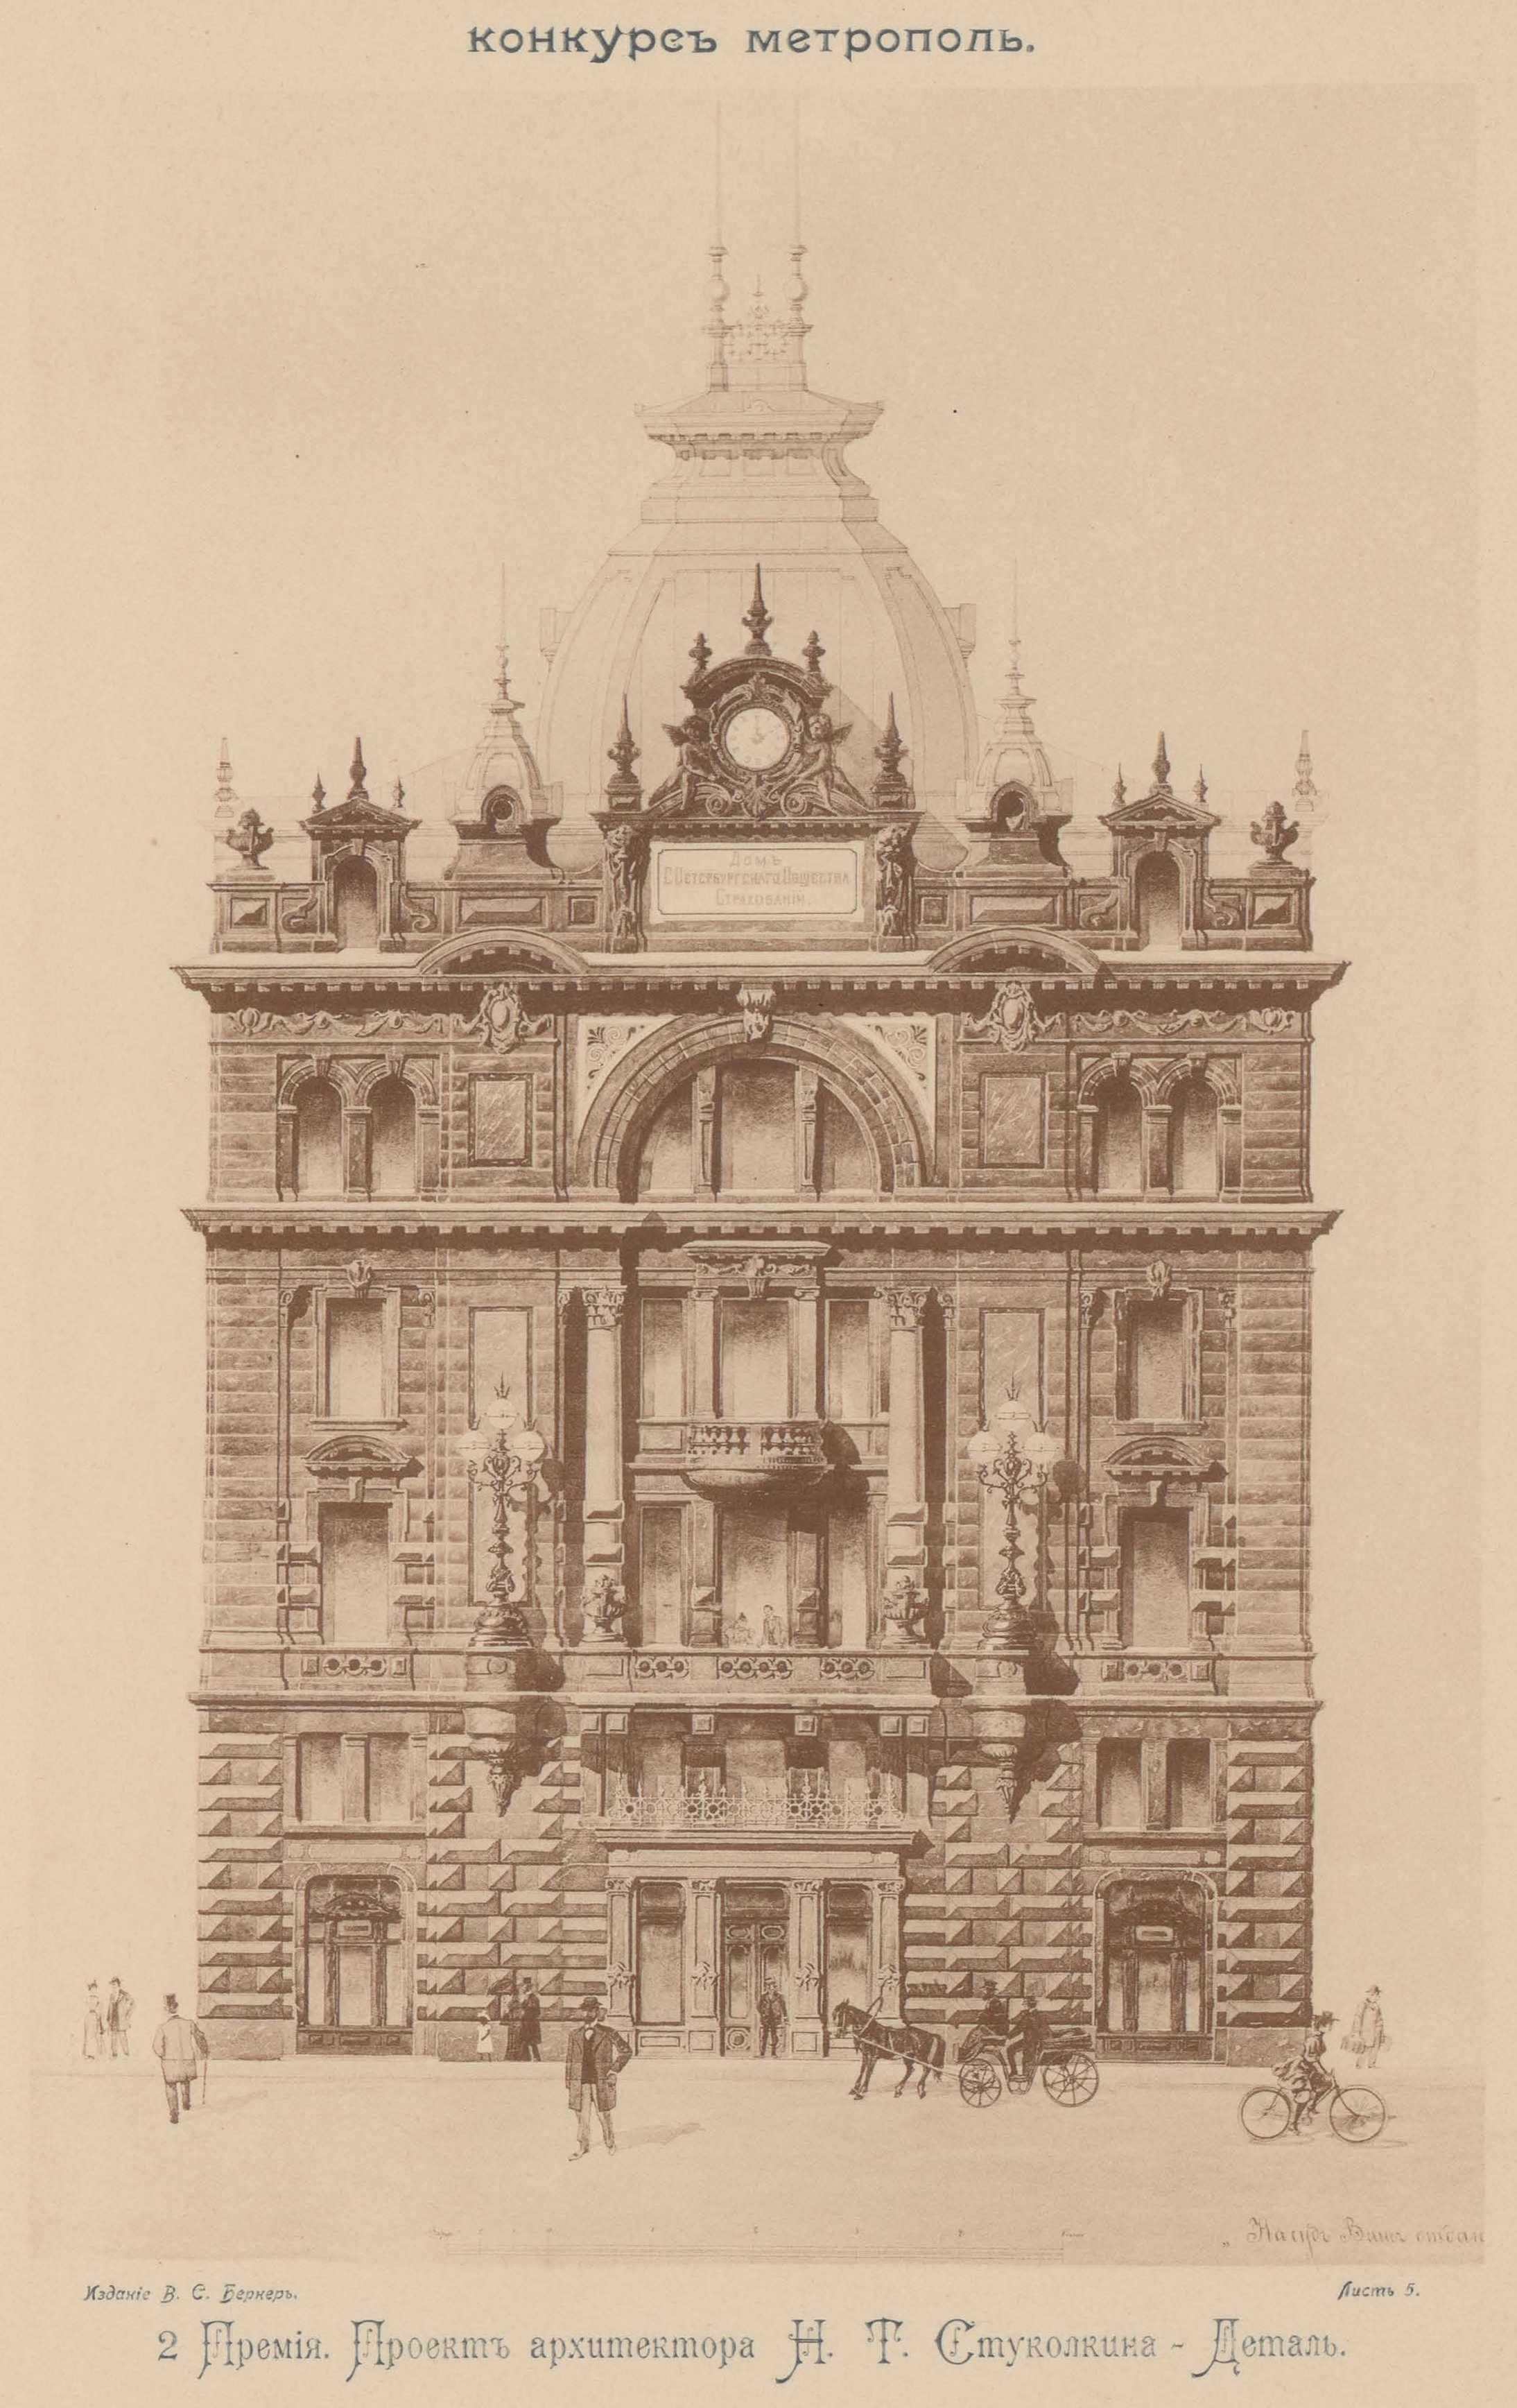 Конкурс на фасад гостиницы «Метрополь» (1899). 2-я премия. Проект архитектора H. Т. Стуколкина